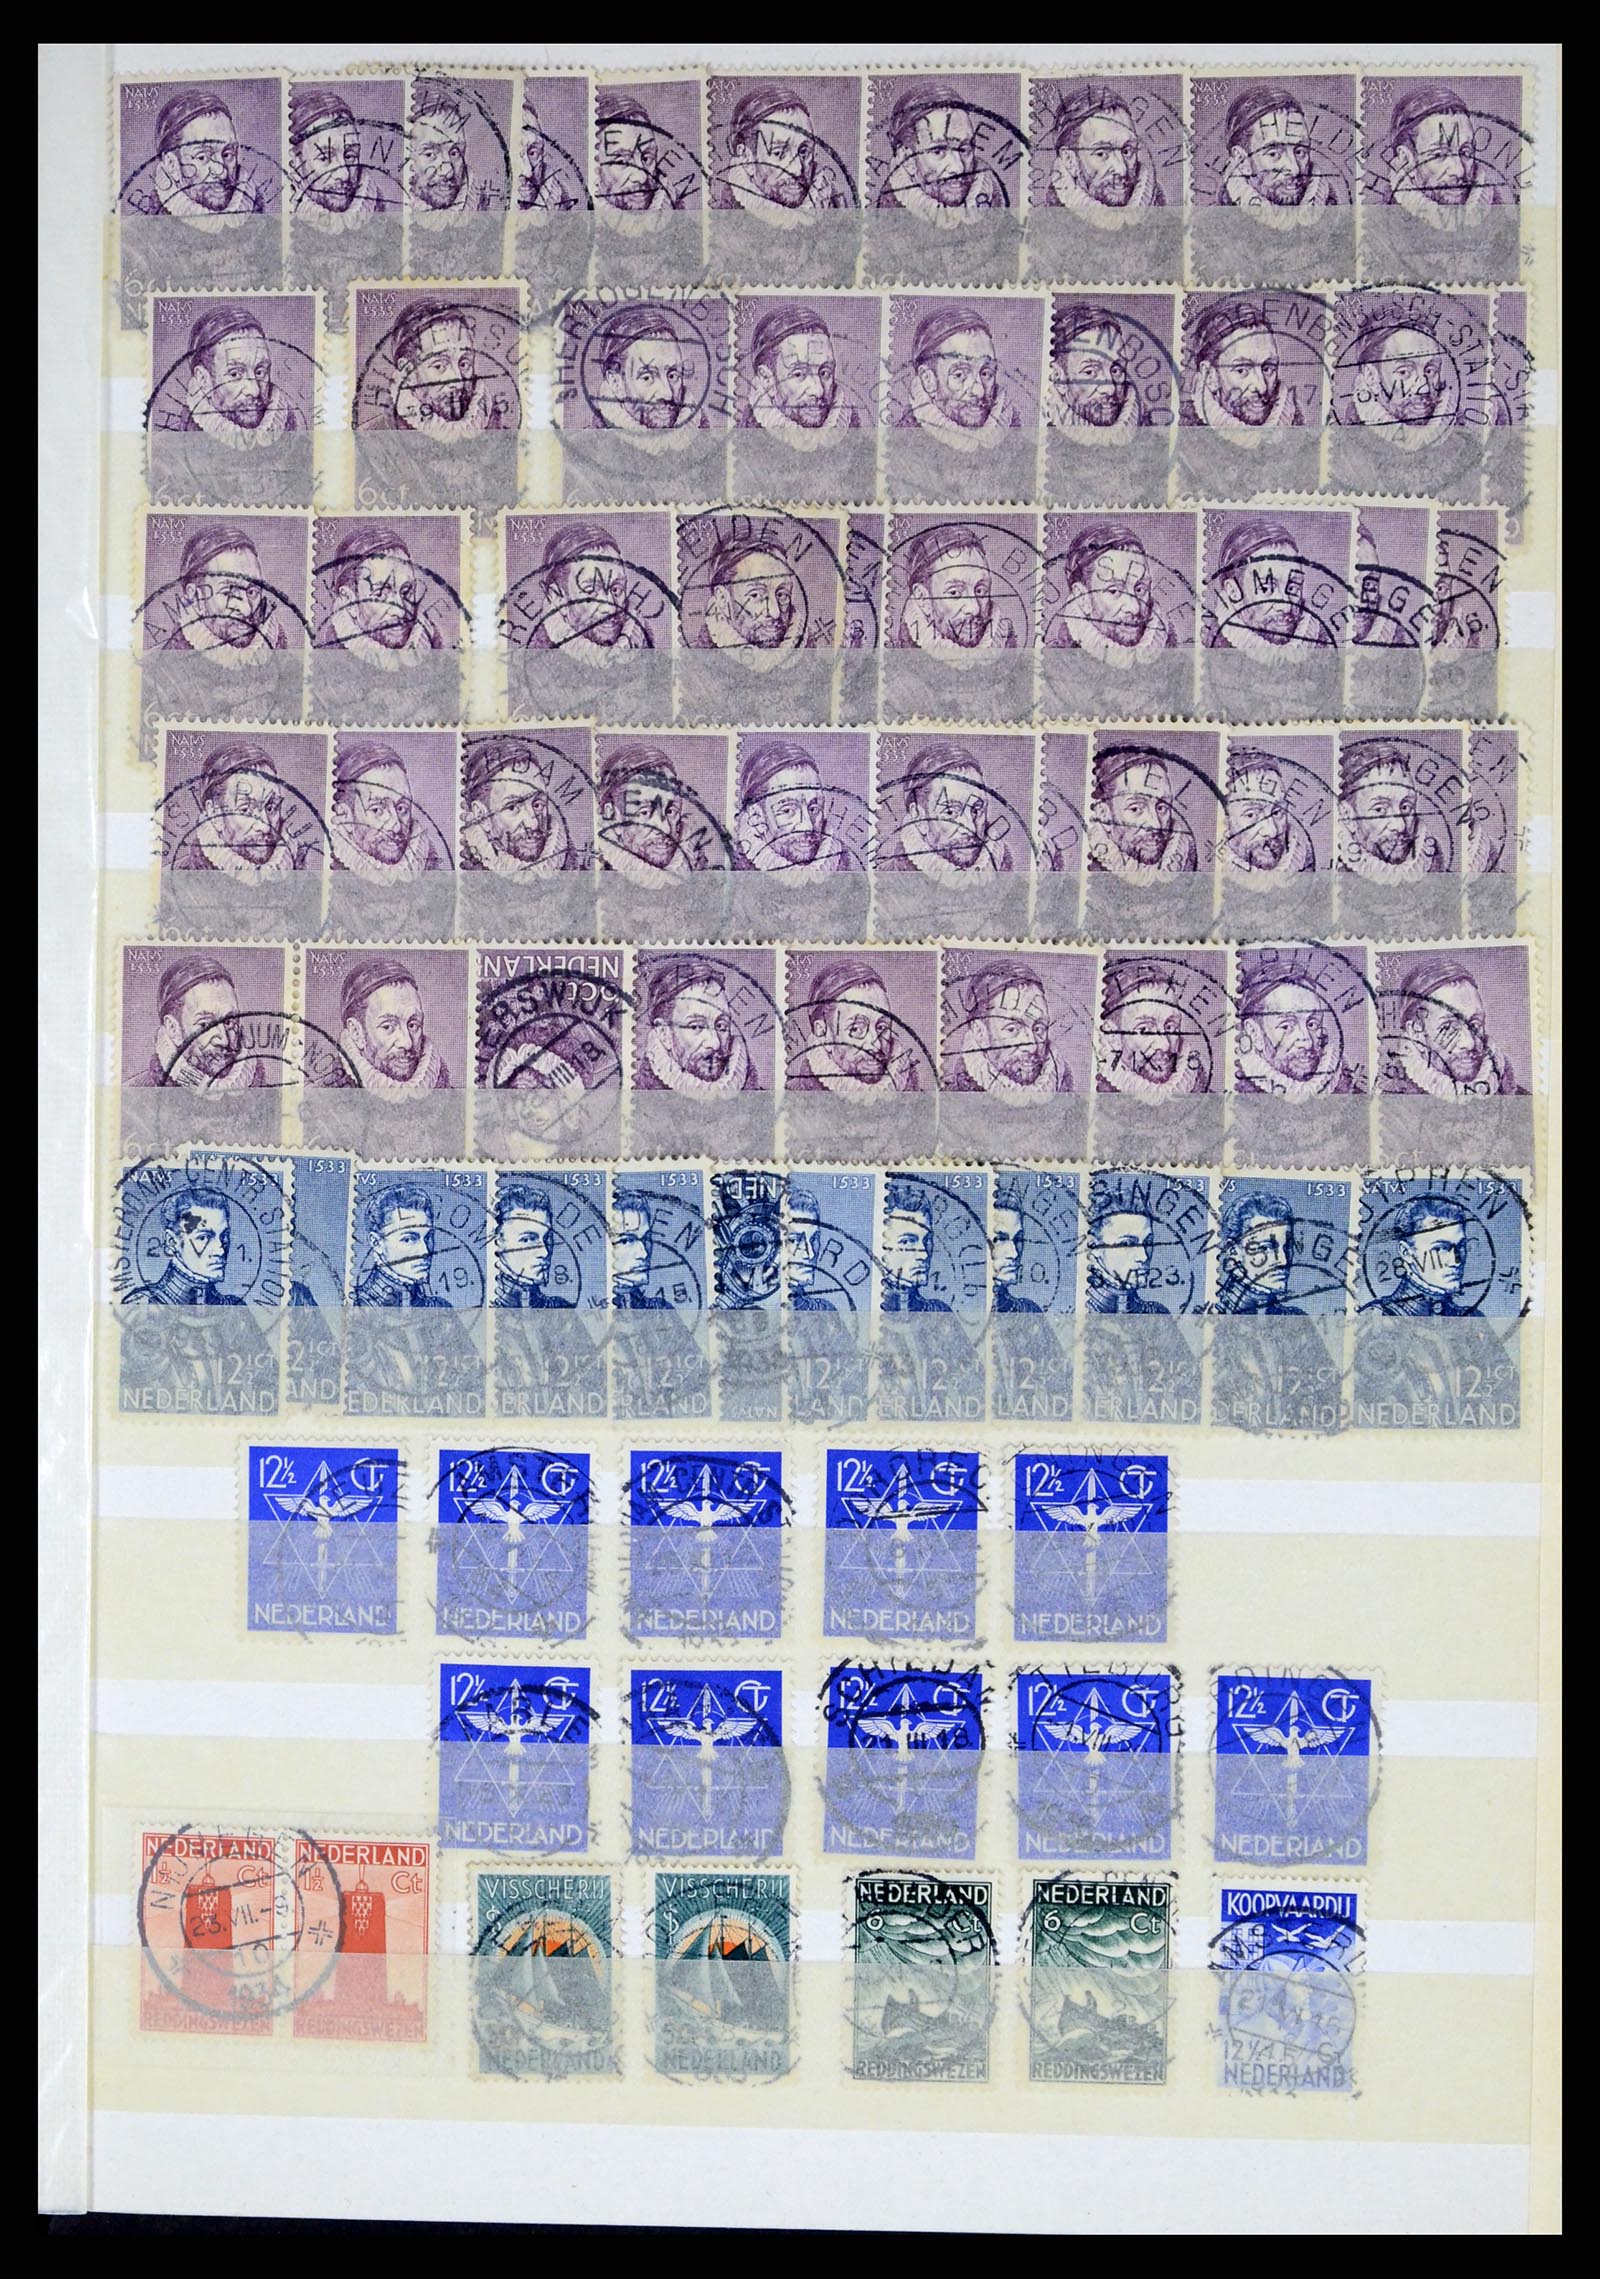 37424 017 - Postzegelverzameling 37424 Nederland kortebalk stempels.